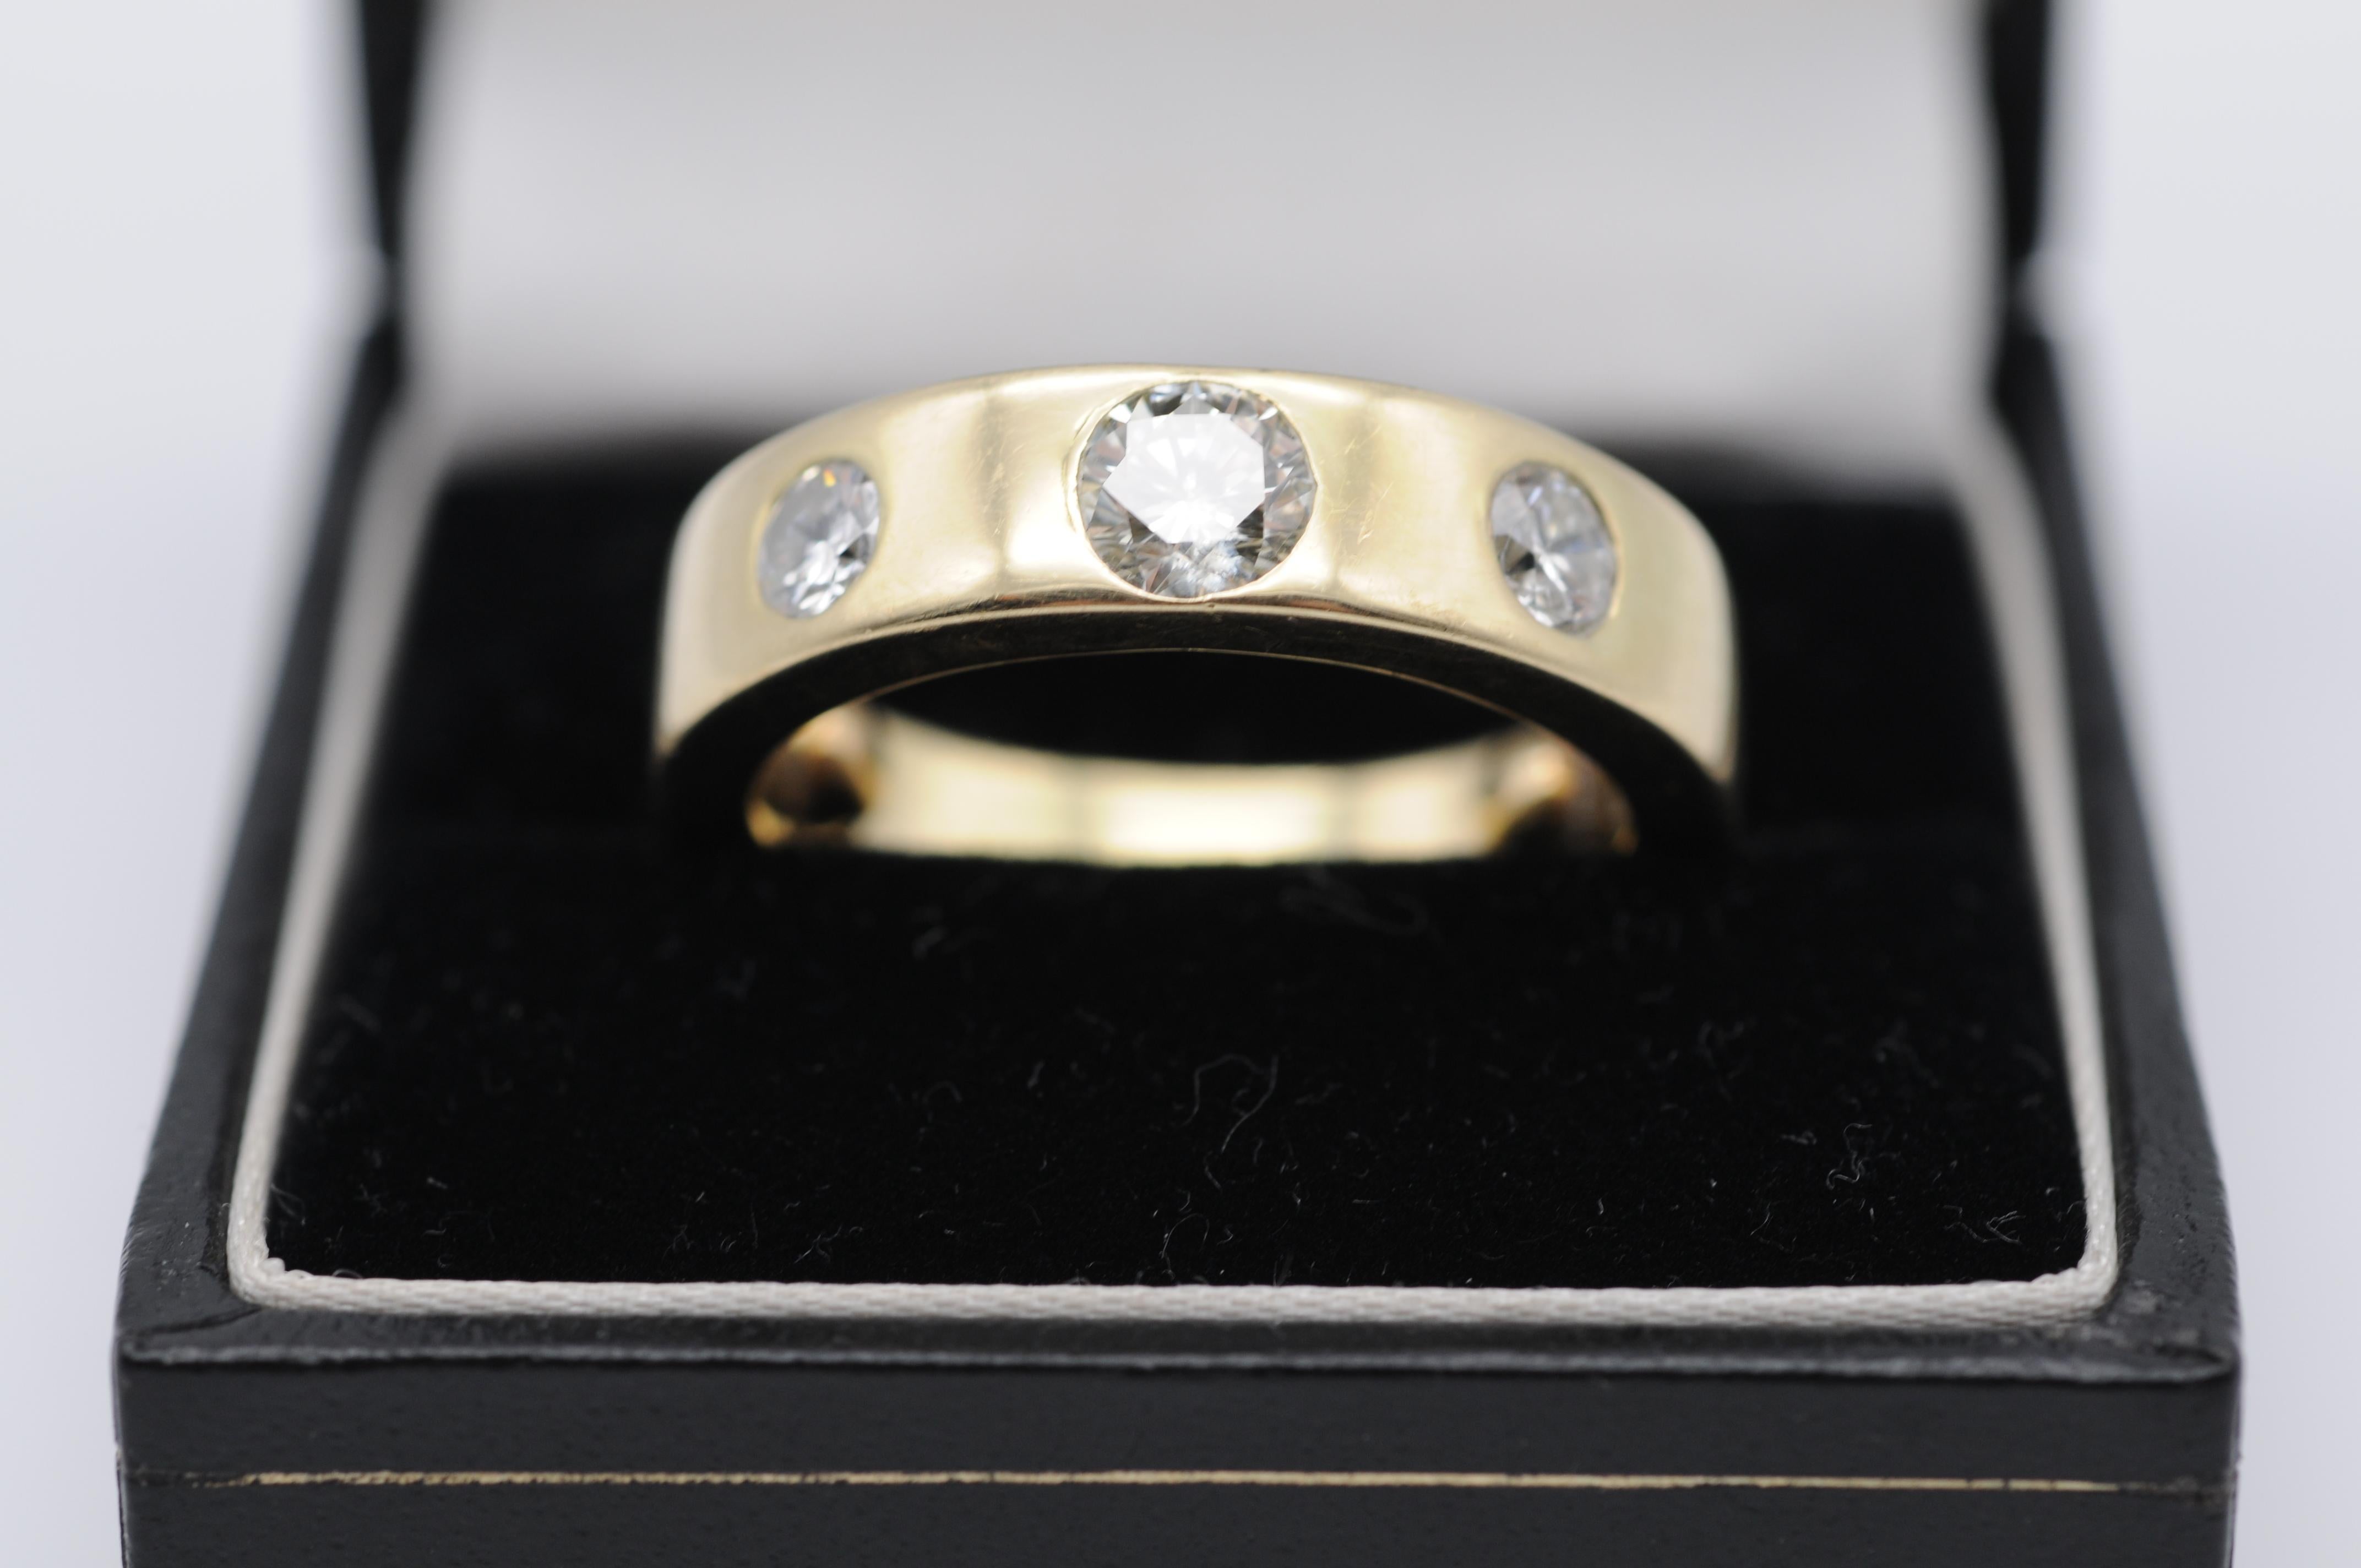 Treten Sie ein in die Welt der Raffinesse und Eleganz mit diesem Diamantring aus 14 Karat Gelbgold. Das klassische Design besteht aus drei exquisiten Diamanten, die jeden, der sie betrachtet, in ihren Bann ziehen.

Der zentrale Diamant ist ein